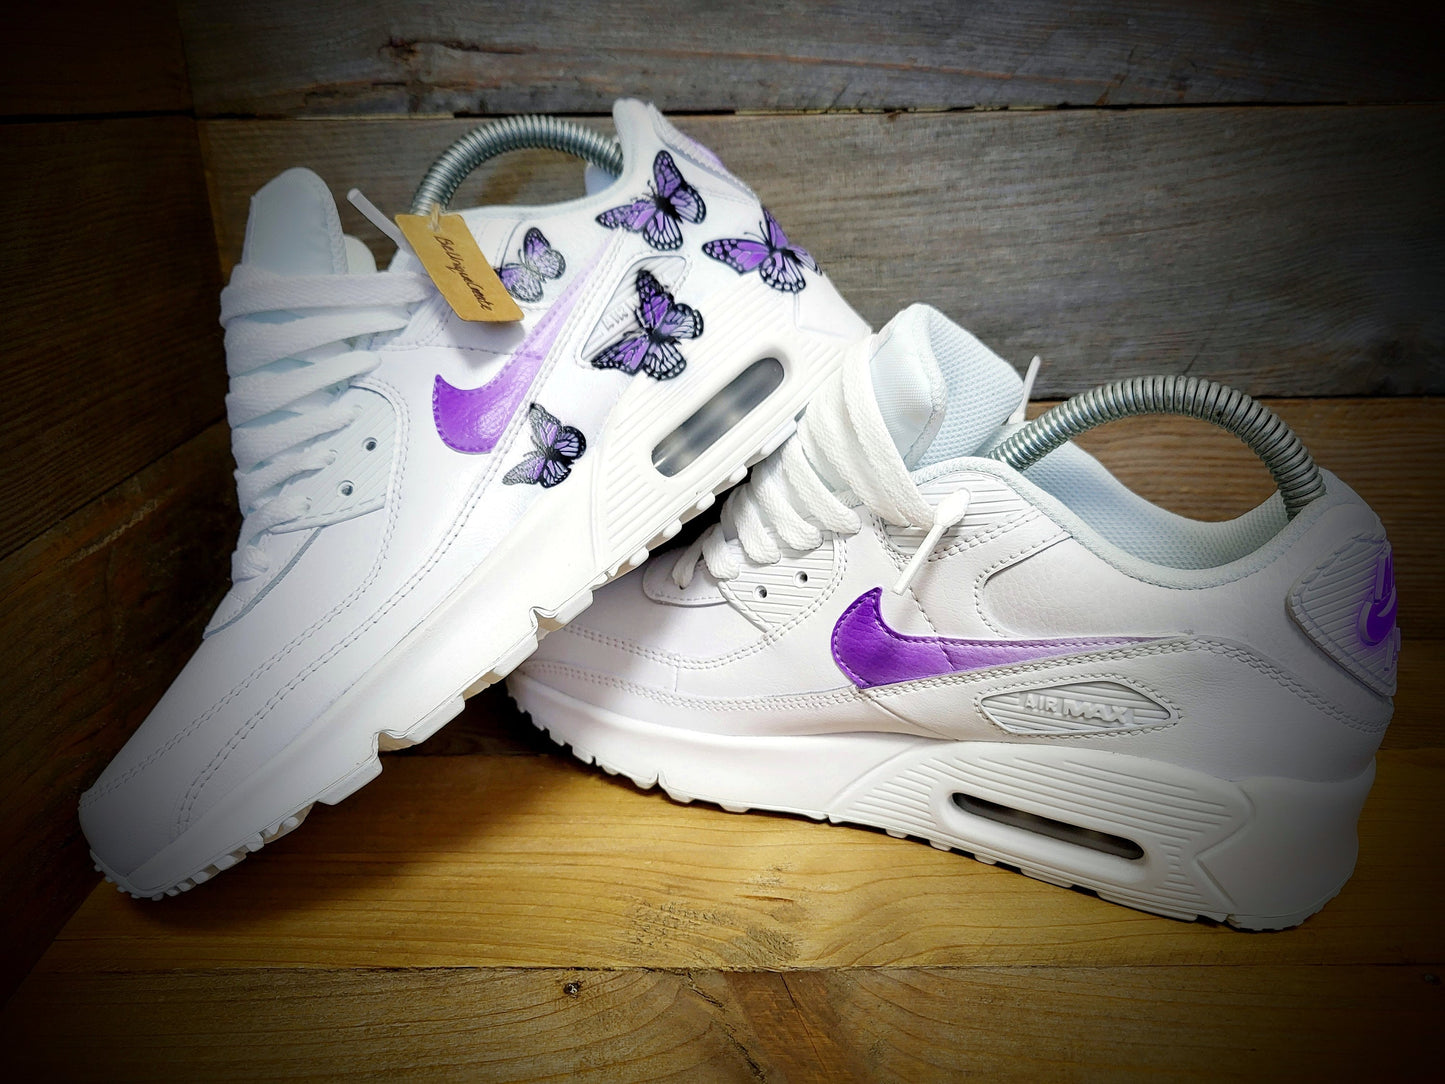 Custom Painted Air Max 90/Sneakers/Shoes/Kicks/Premium/Personalised/Purple Butterfly